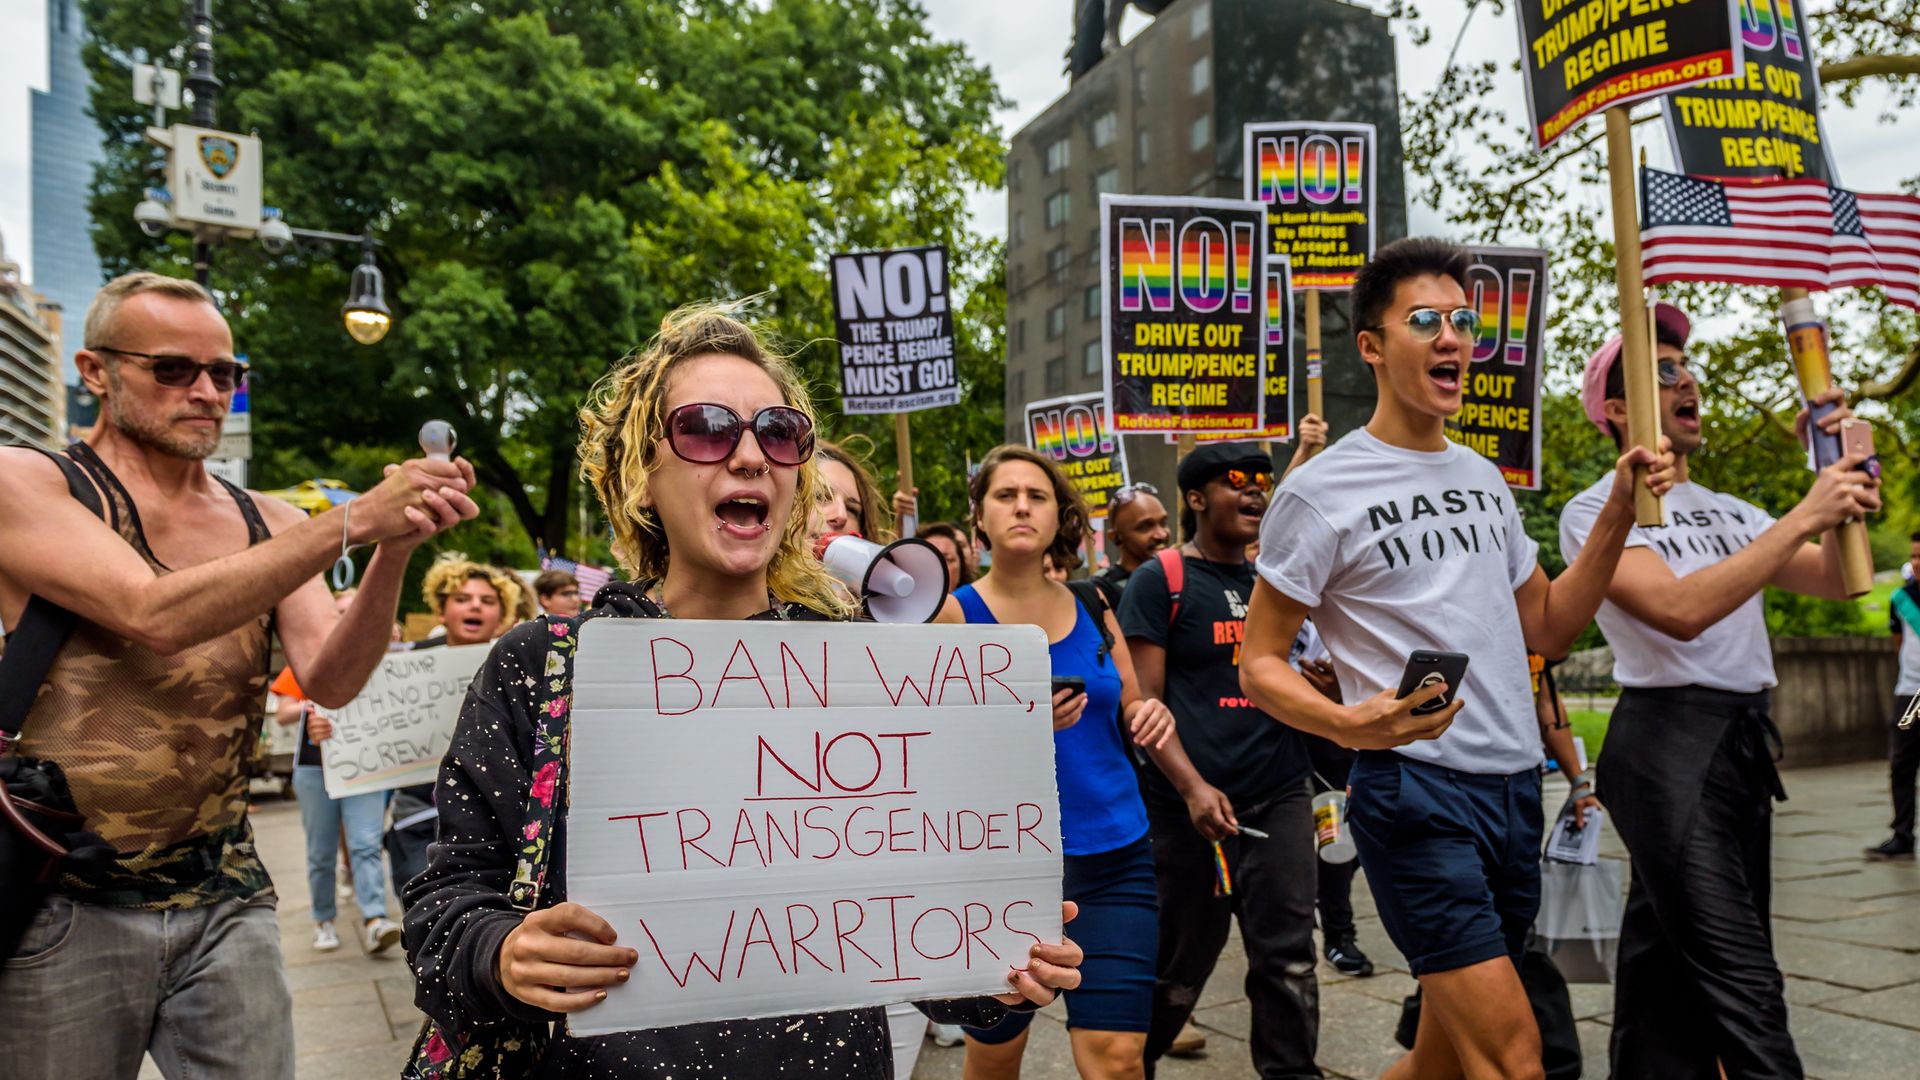 Protesting transgender ban